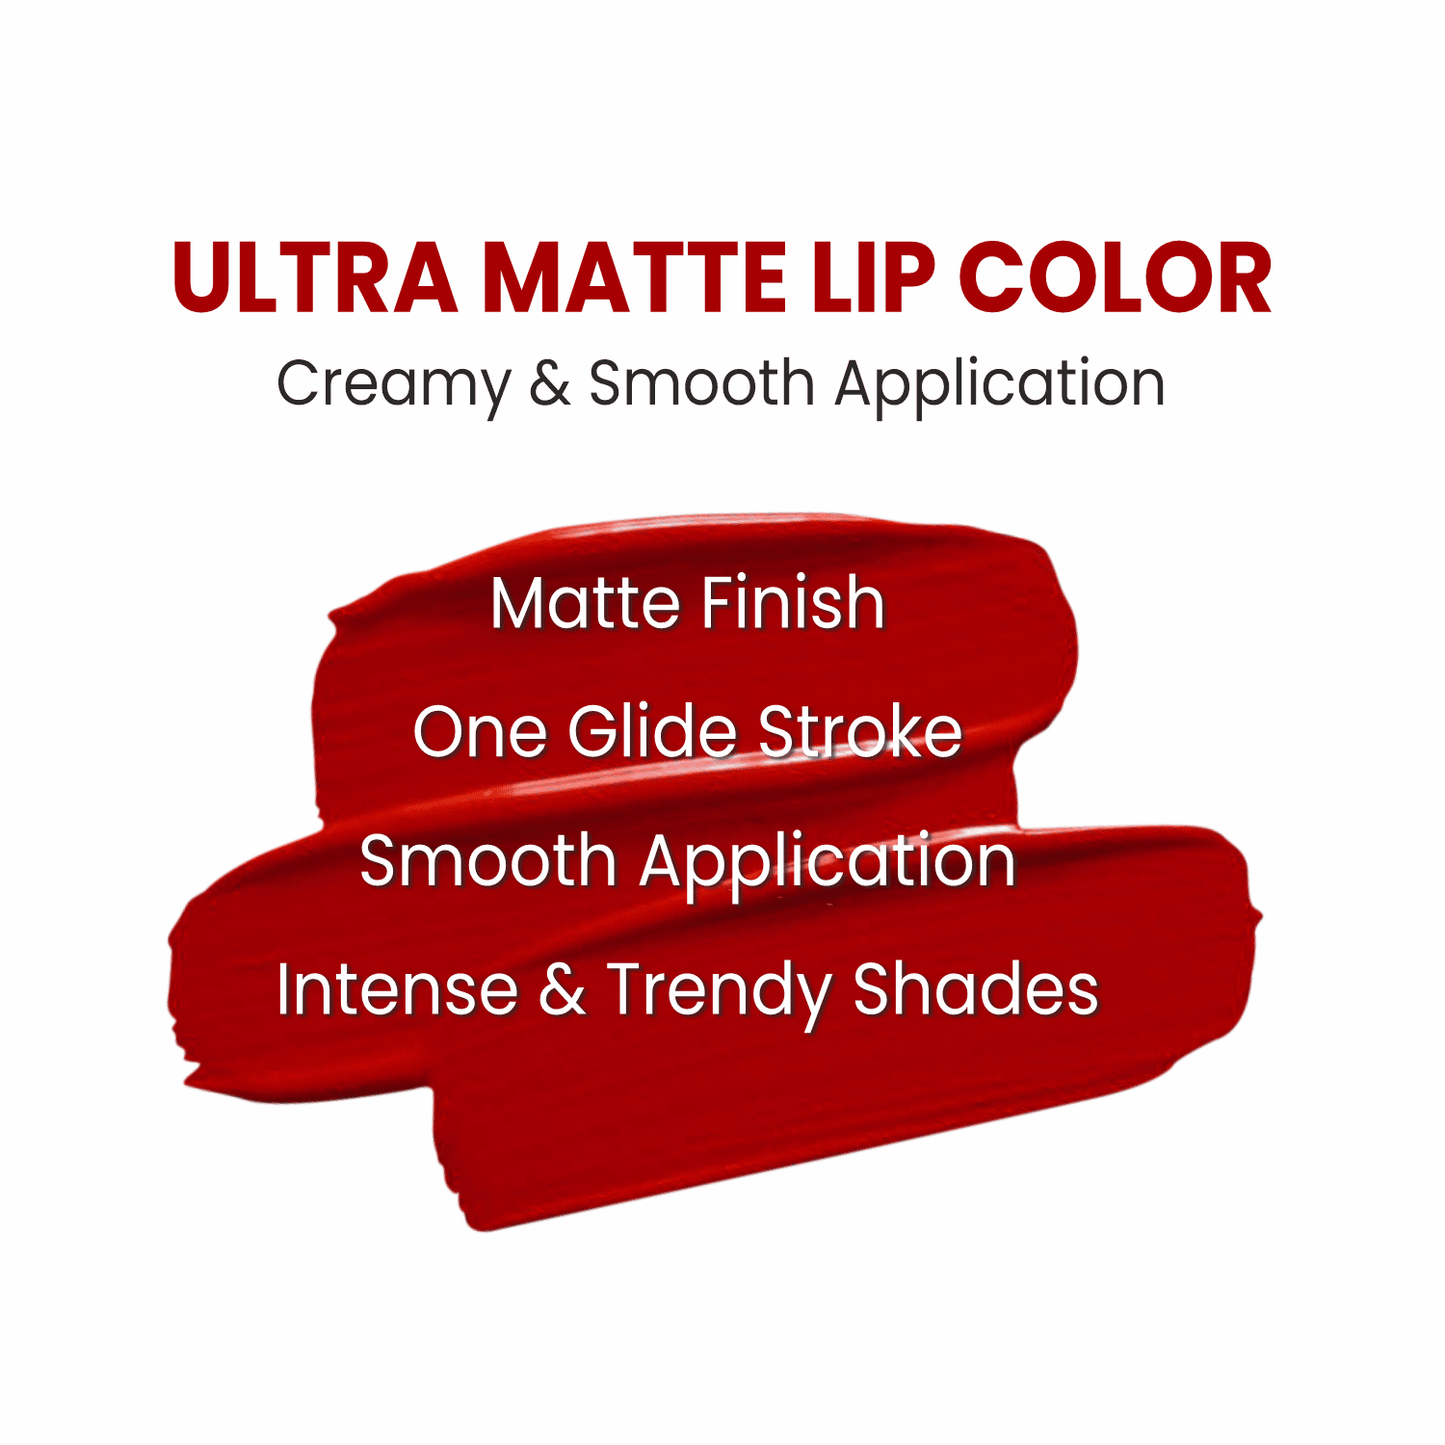 Ultra Matte Lip Color - 09 Wild Fire Night